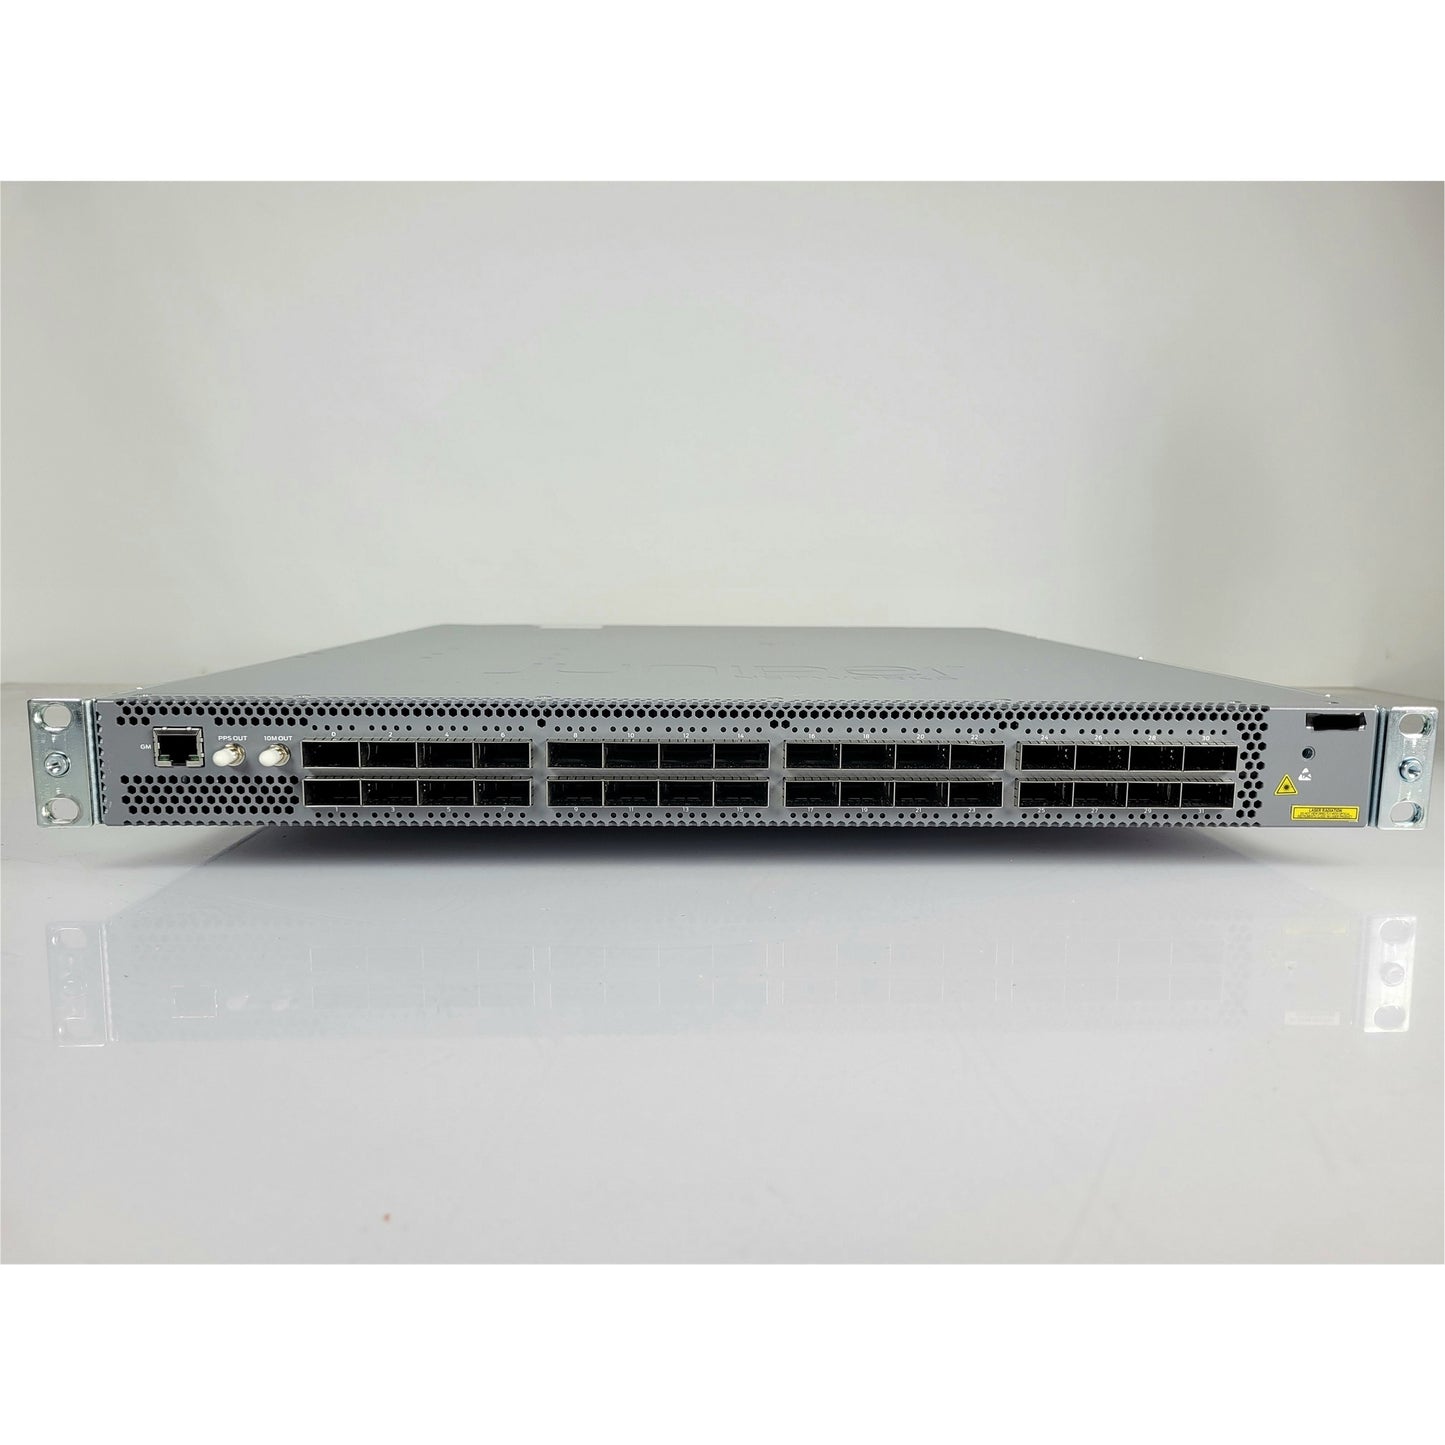 Juniper QFX5200-32C-AFO, 32x QSFP+/QSFP28 ports switch (Used - Good)